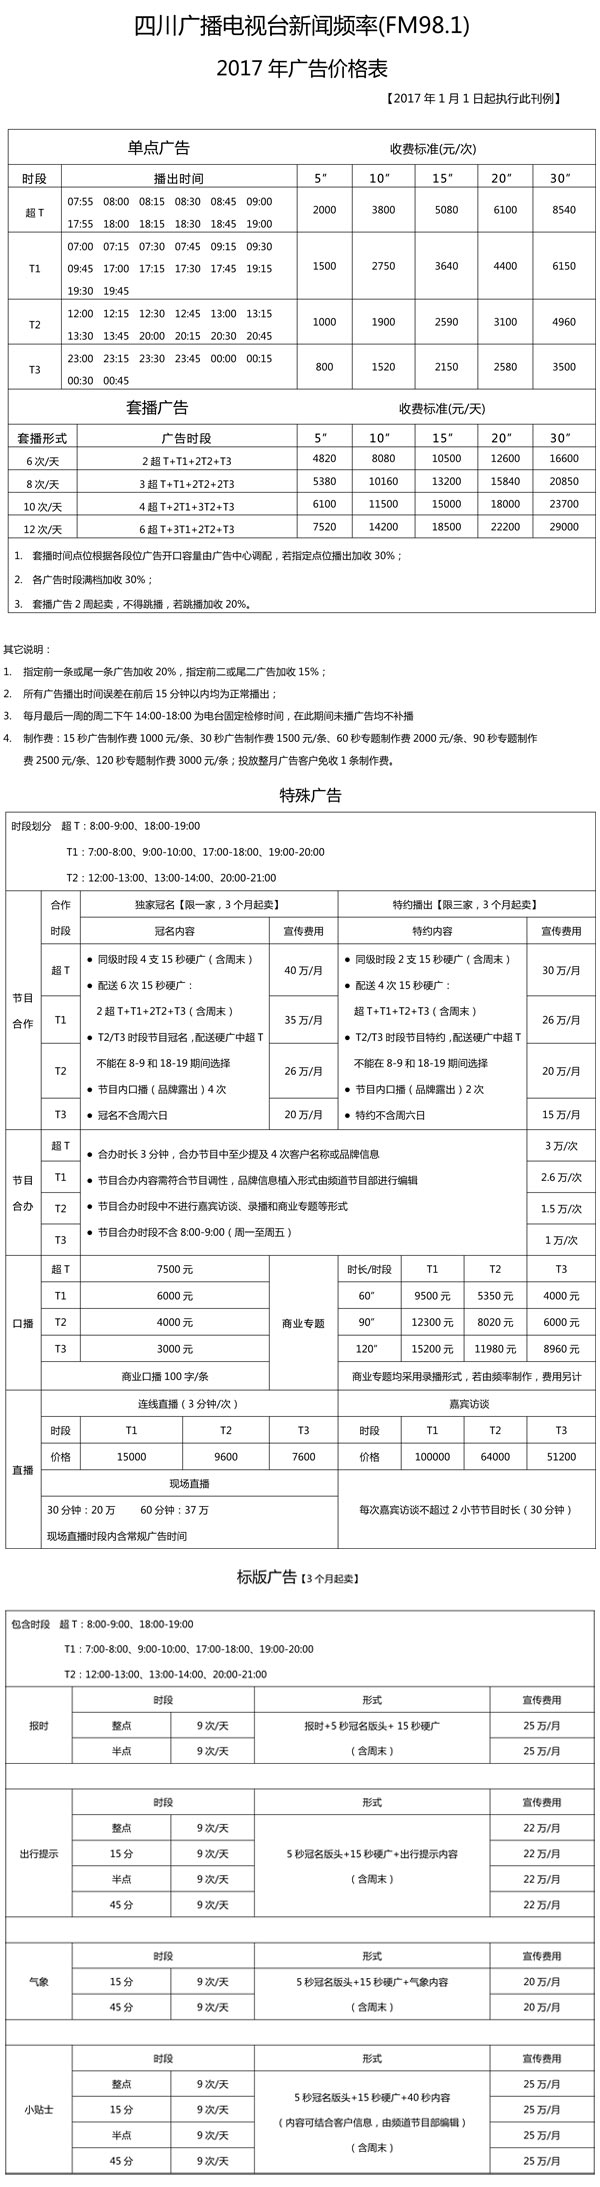 四川人民广播电台新闻广播(FM98.1)2017年广告价格